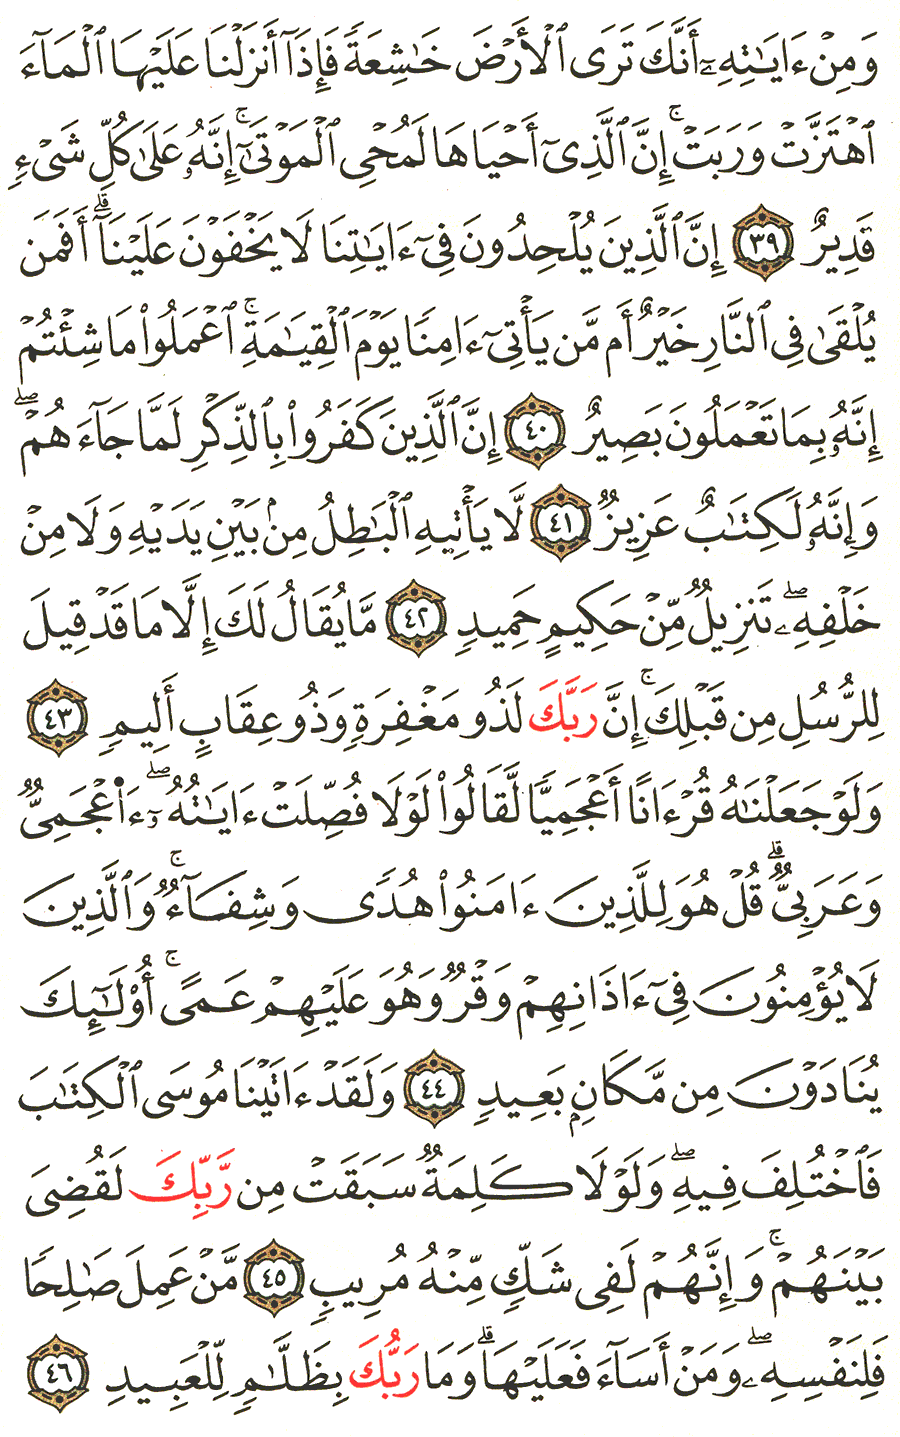 الصفحة 481 من القرآن الكريم